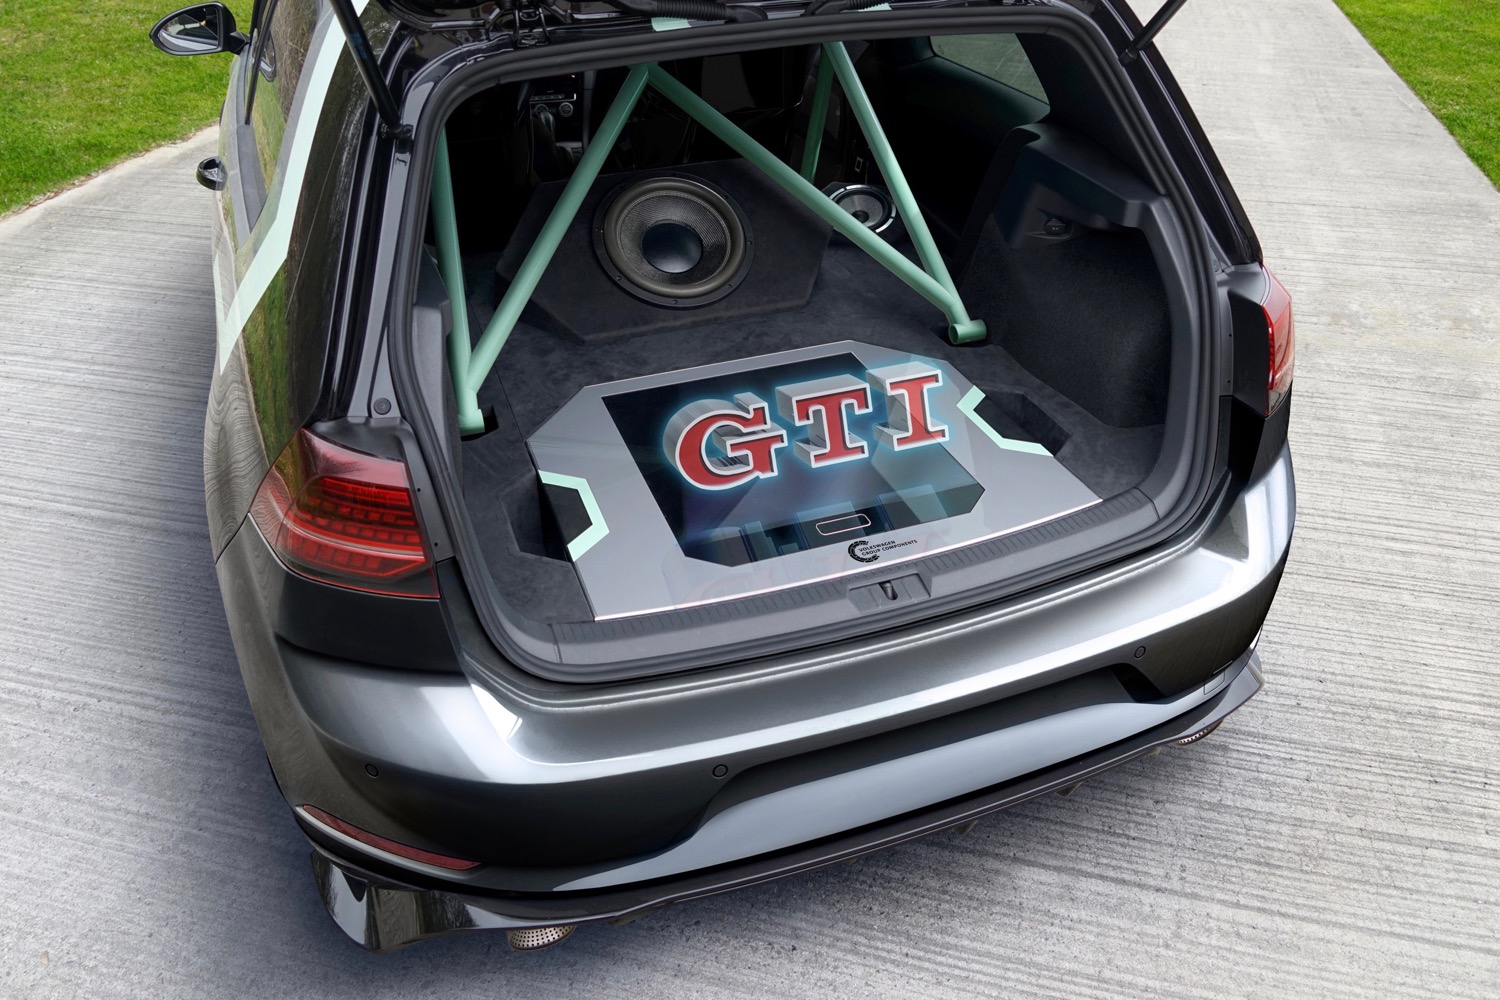 Volkswagen Golf GTI Aurora concept